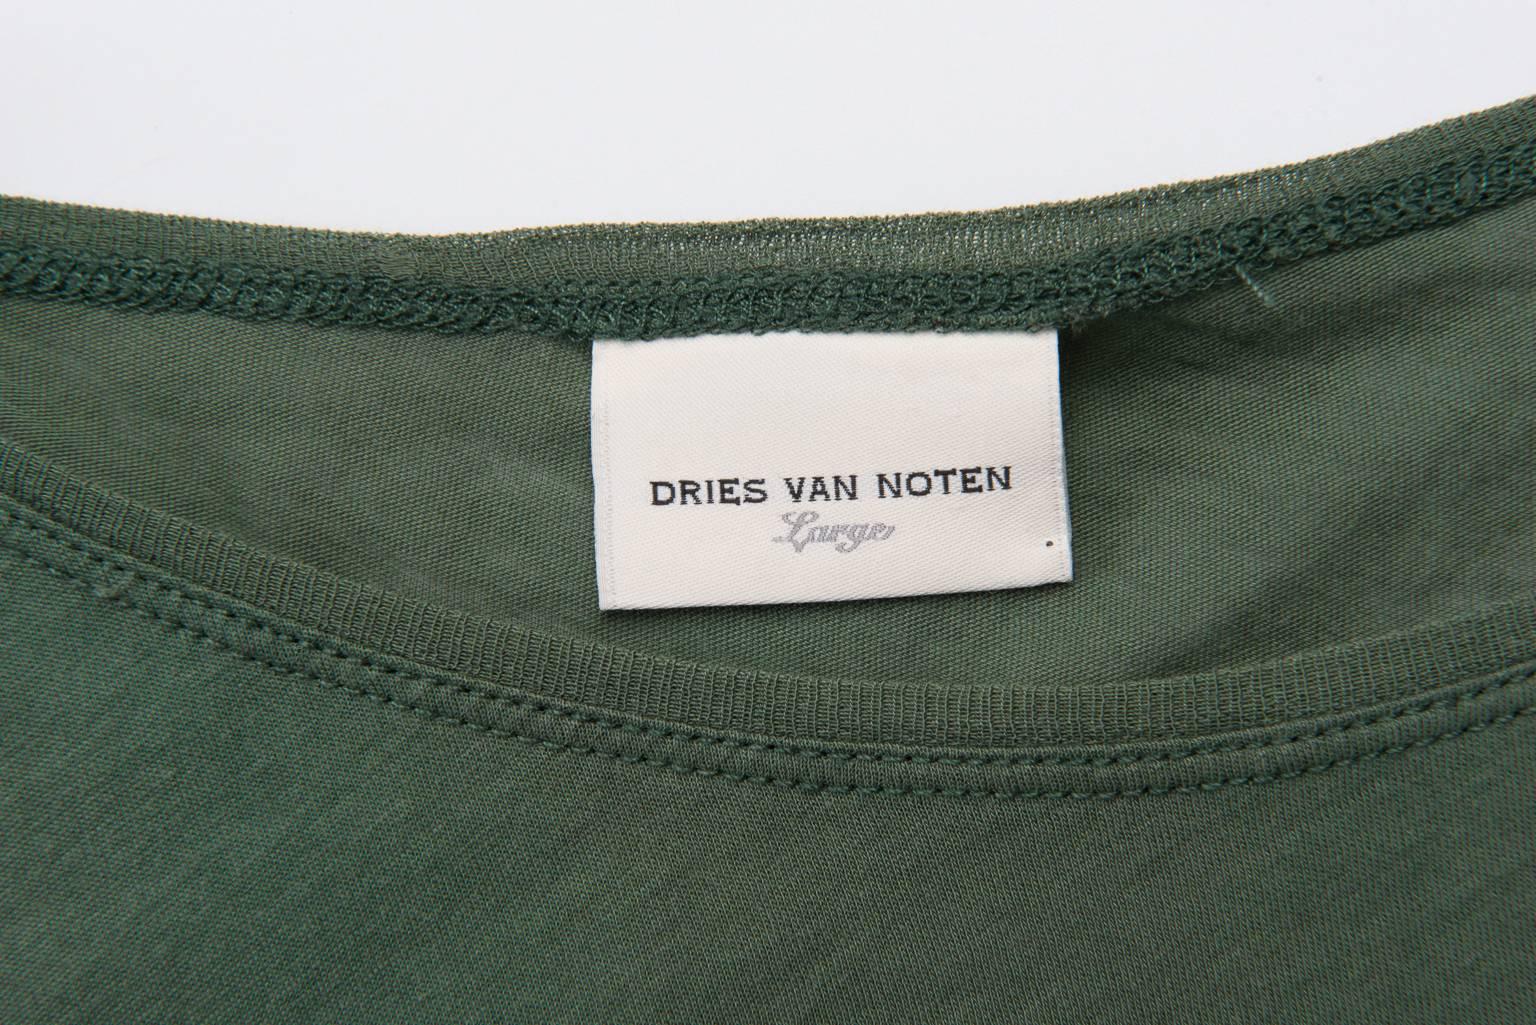  Dries Van Noten Cotton Top For Sale 4